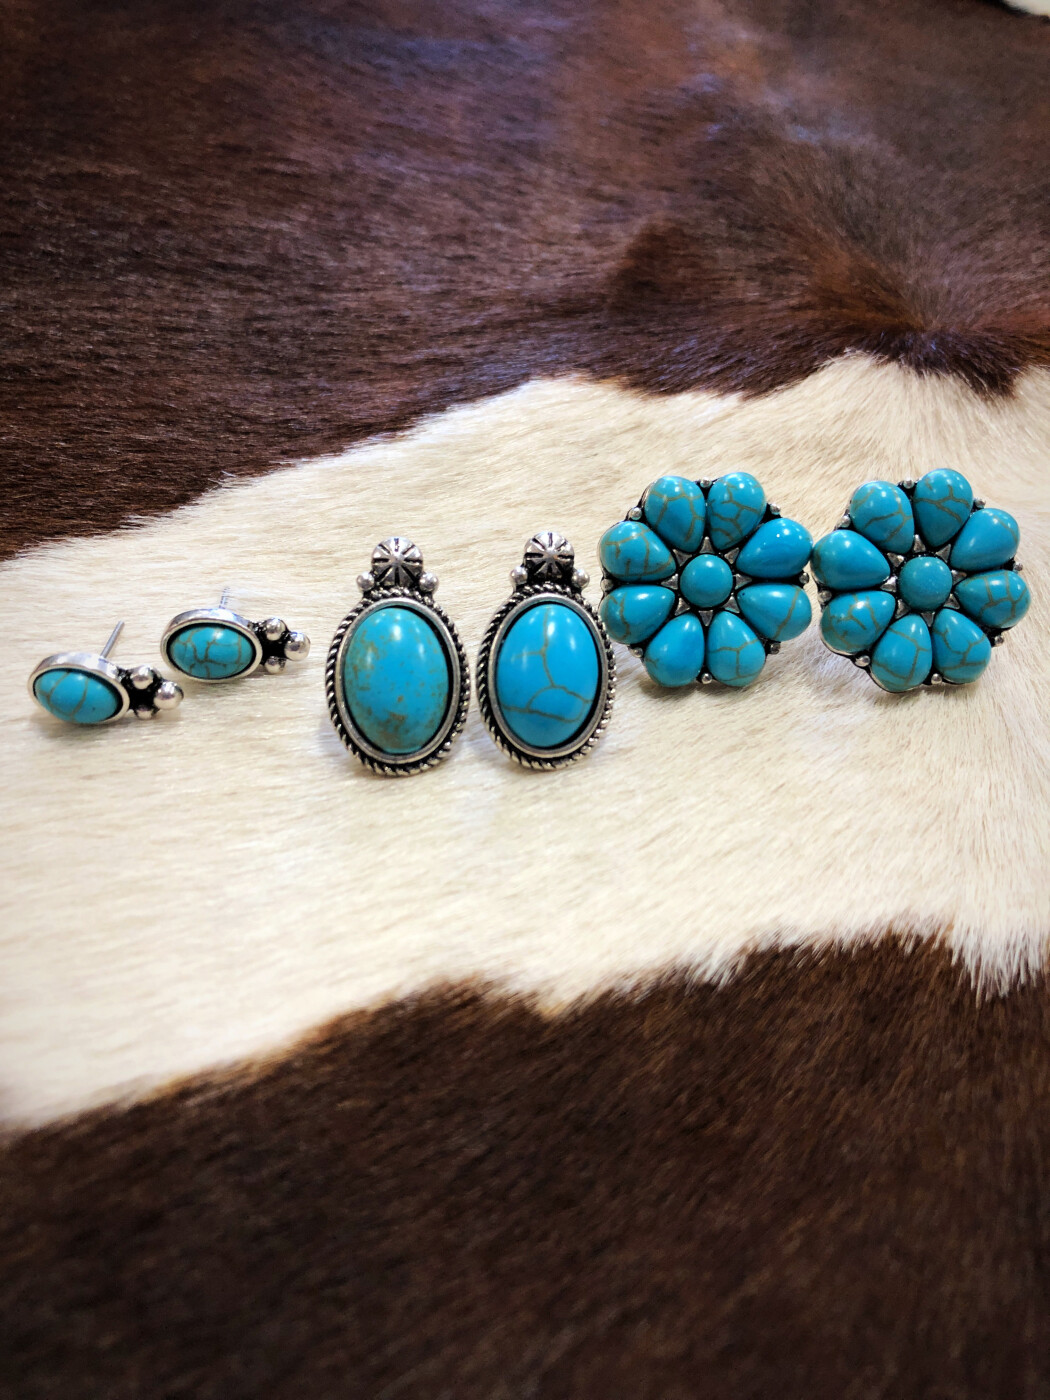 Yolanda â 3 Western Turquoise Earrings Set ( Turquoise / Silver ) â Ale Accessories